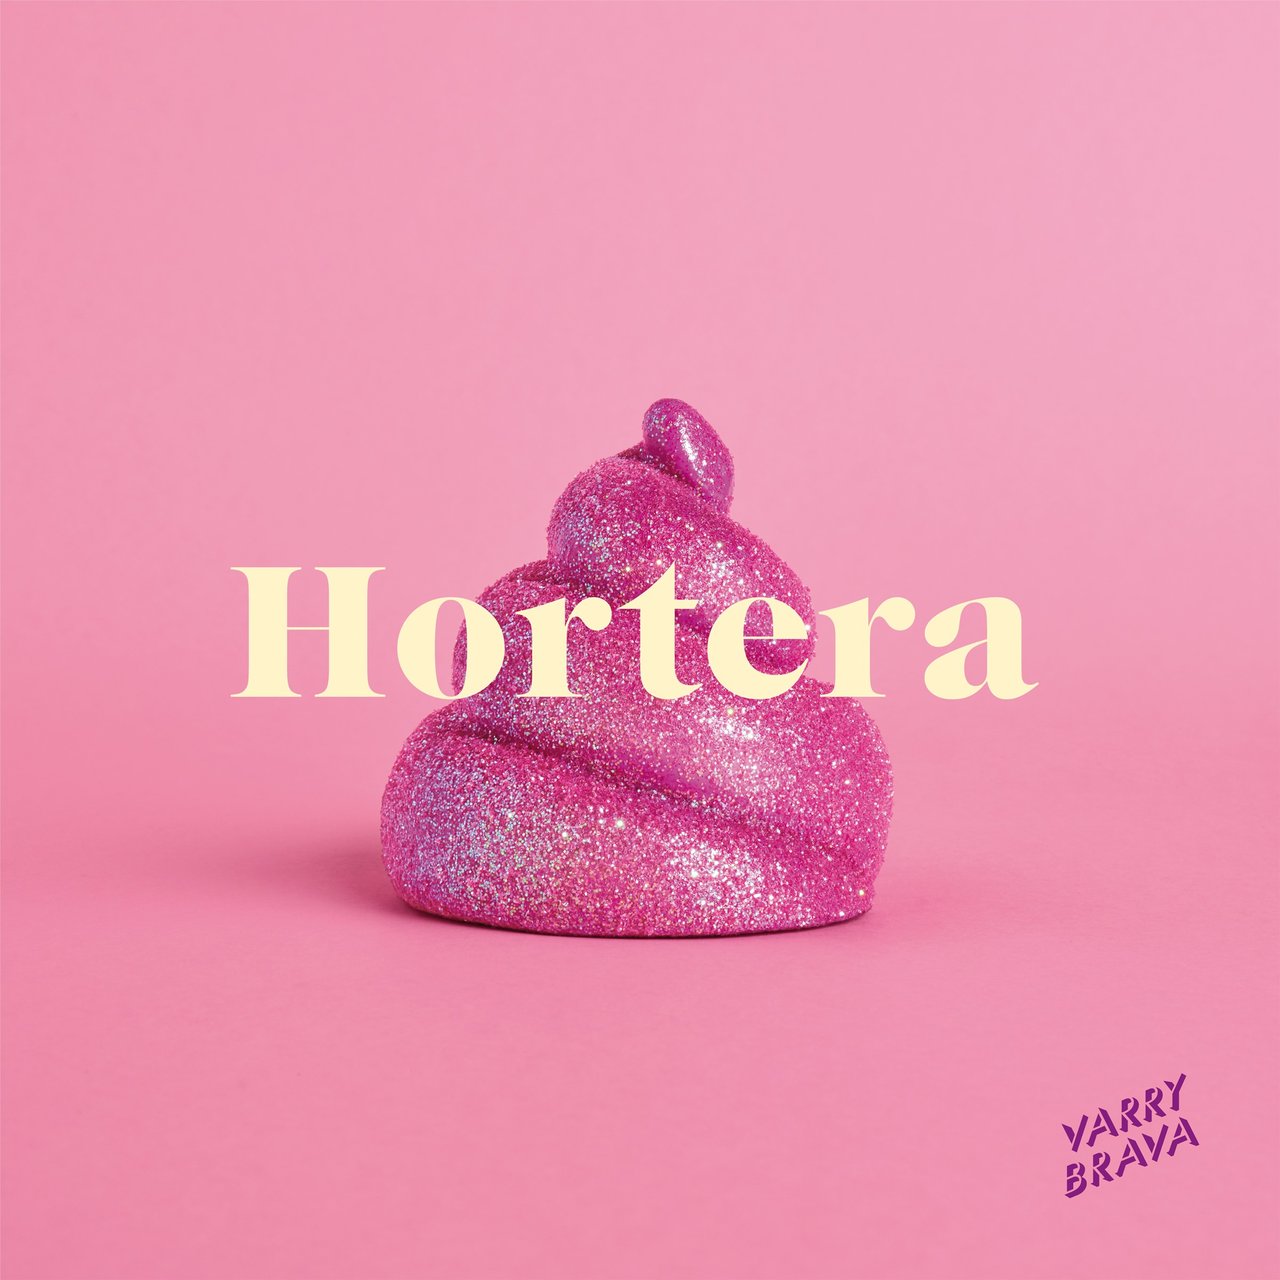 Varry Brava — Hortera cover artwork